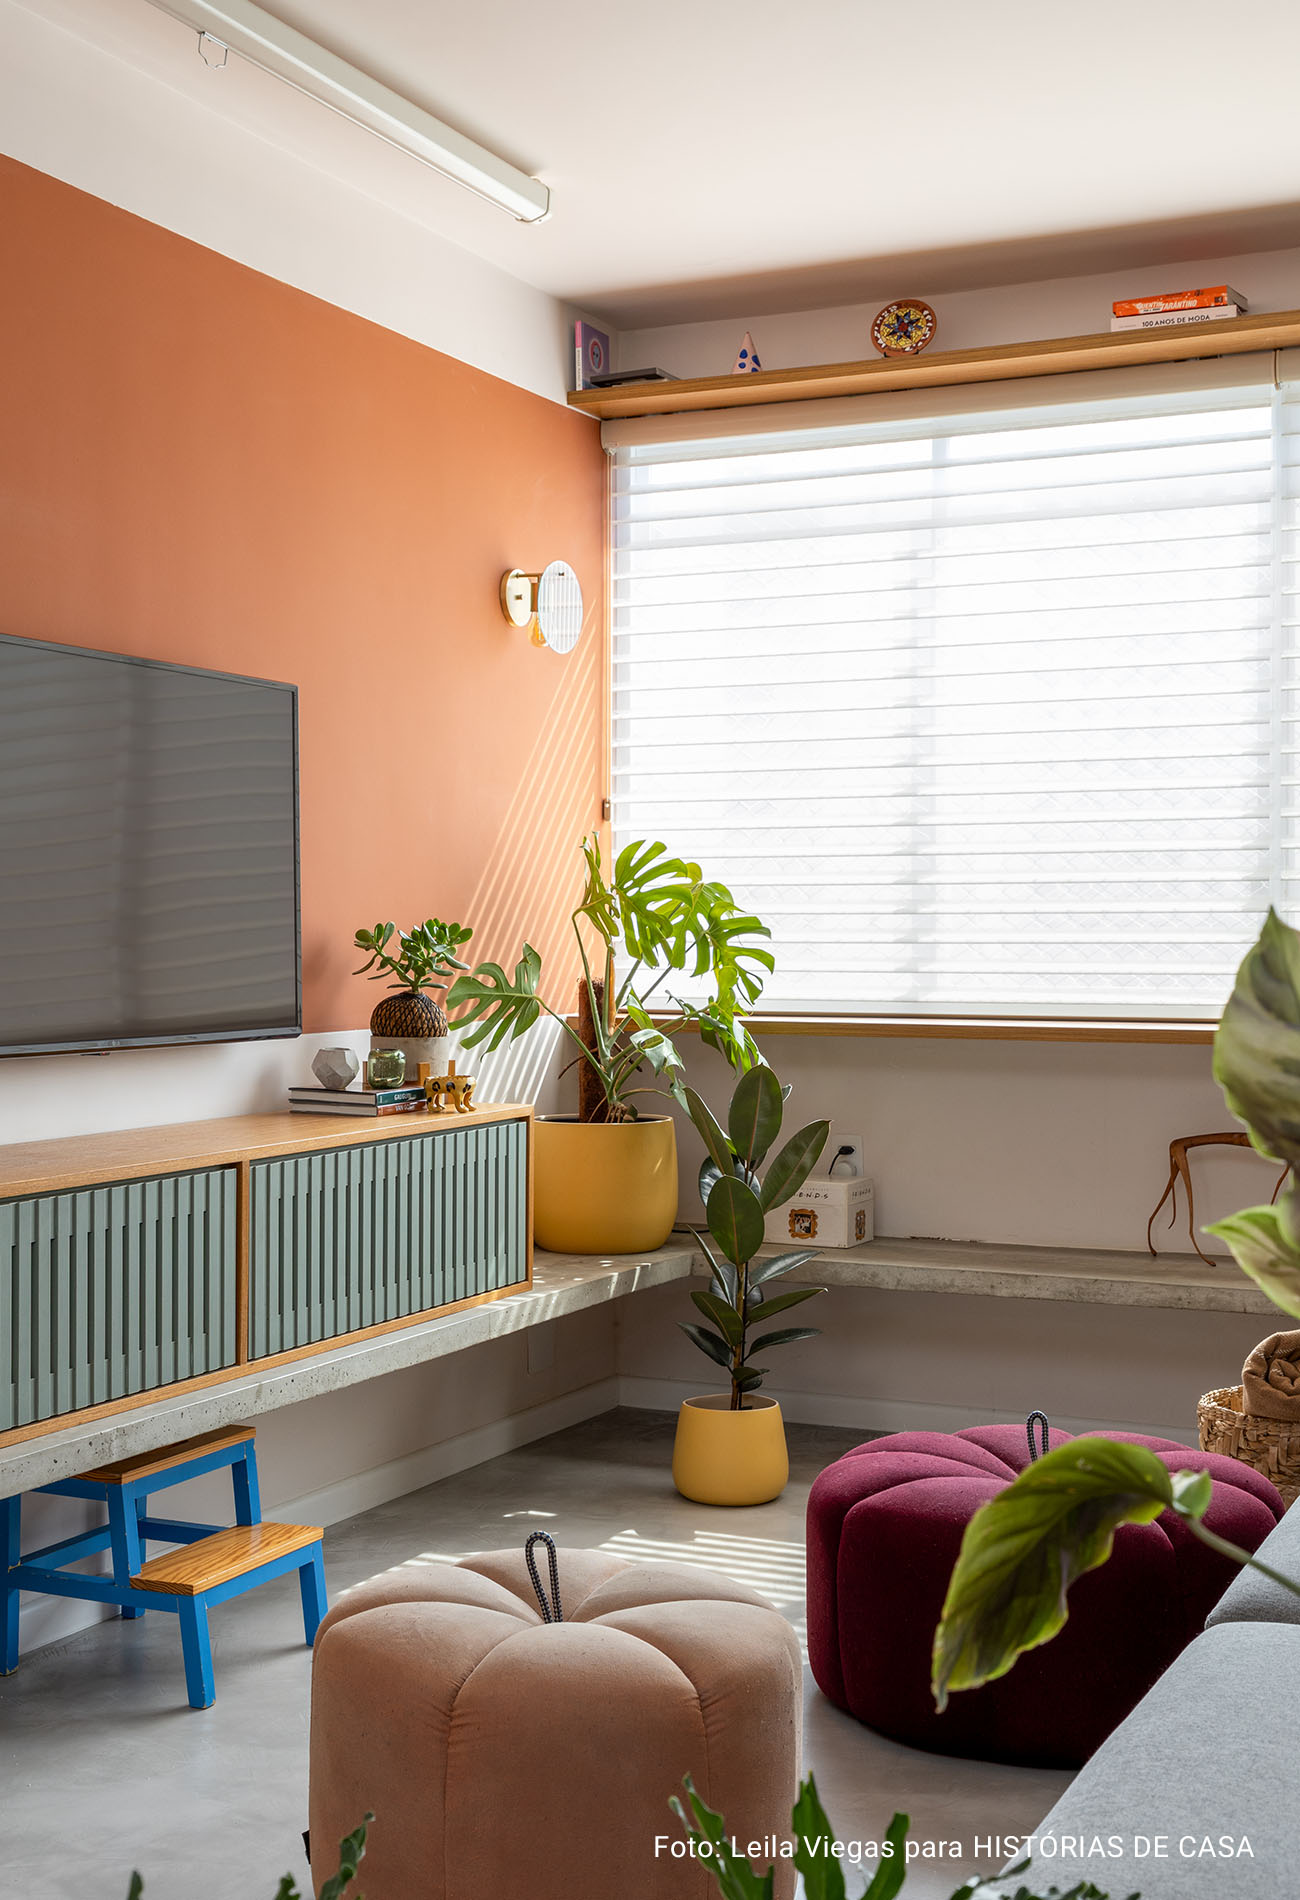 Apartamento colorido e integrado com gatos e eletrodomésticos da Electrolux